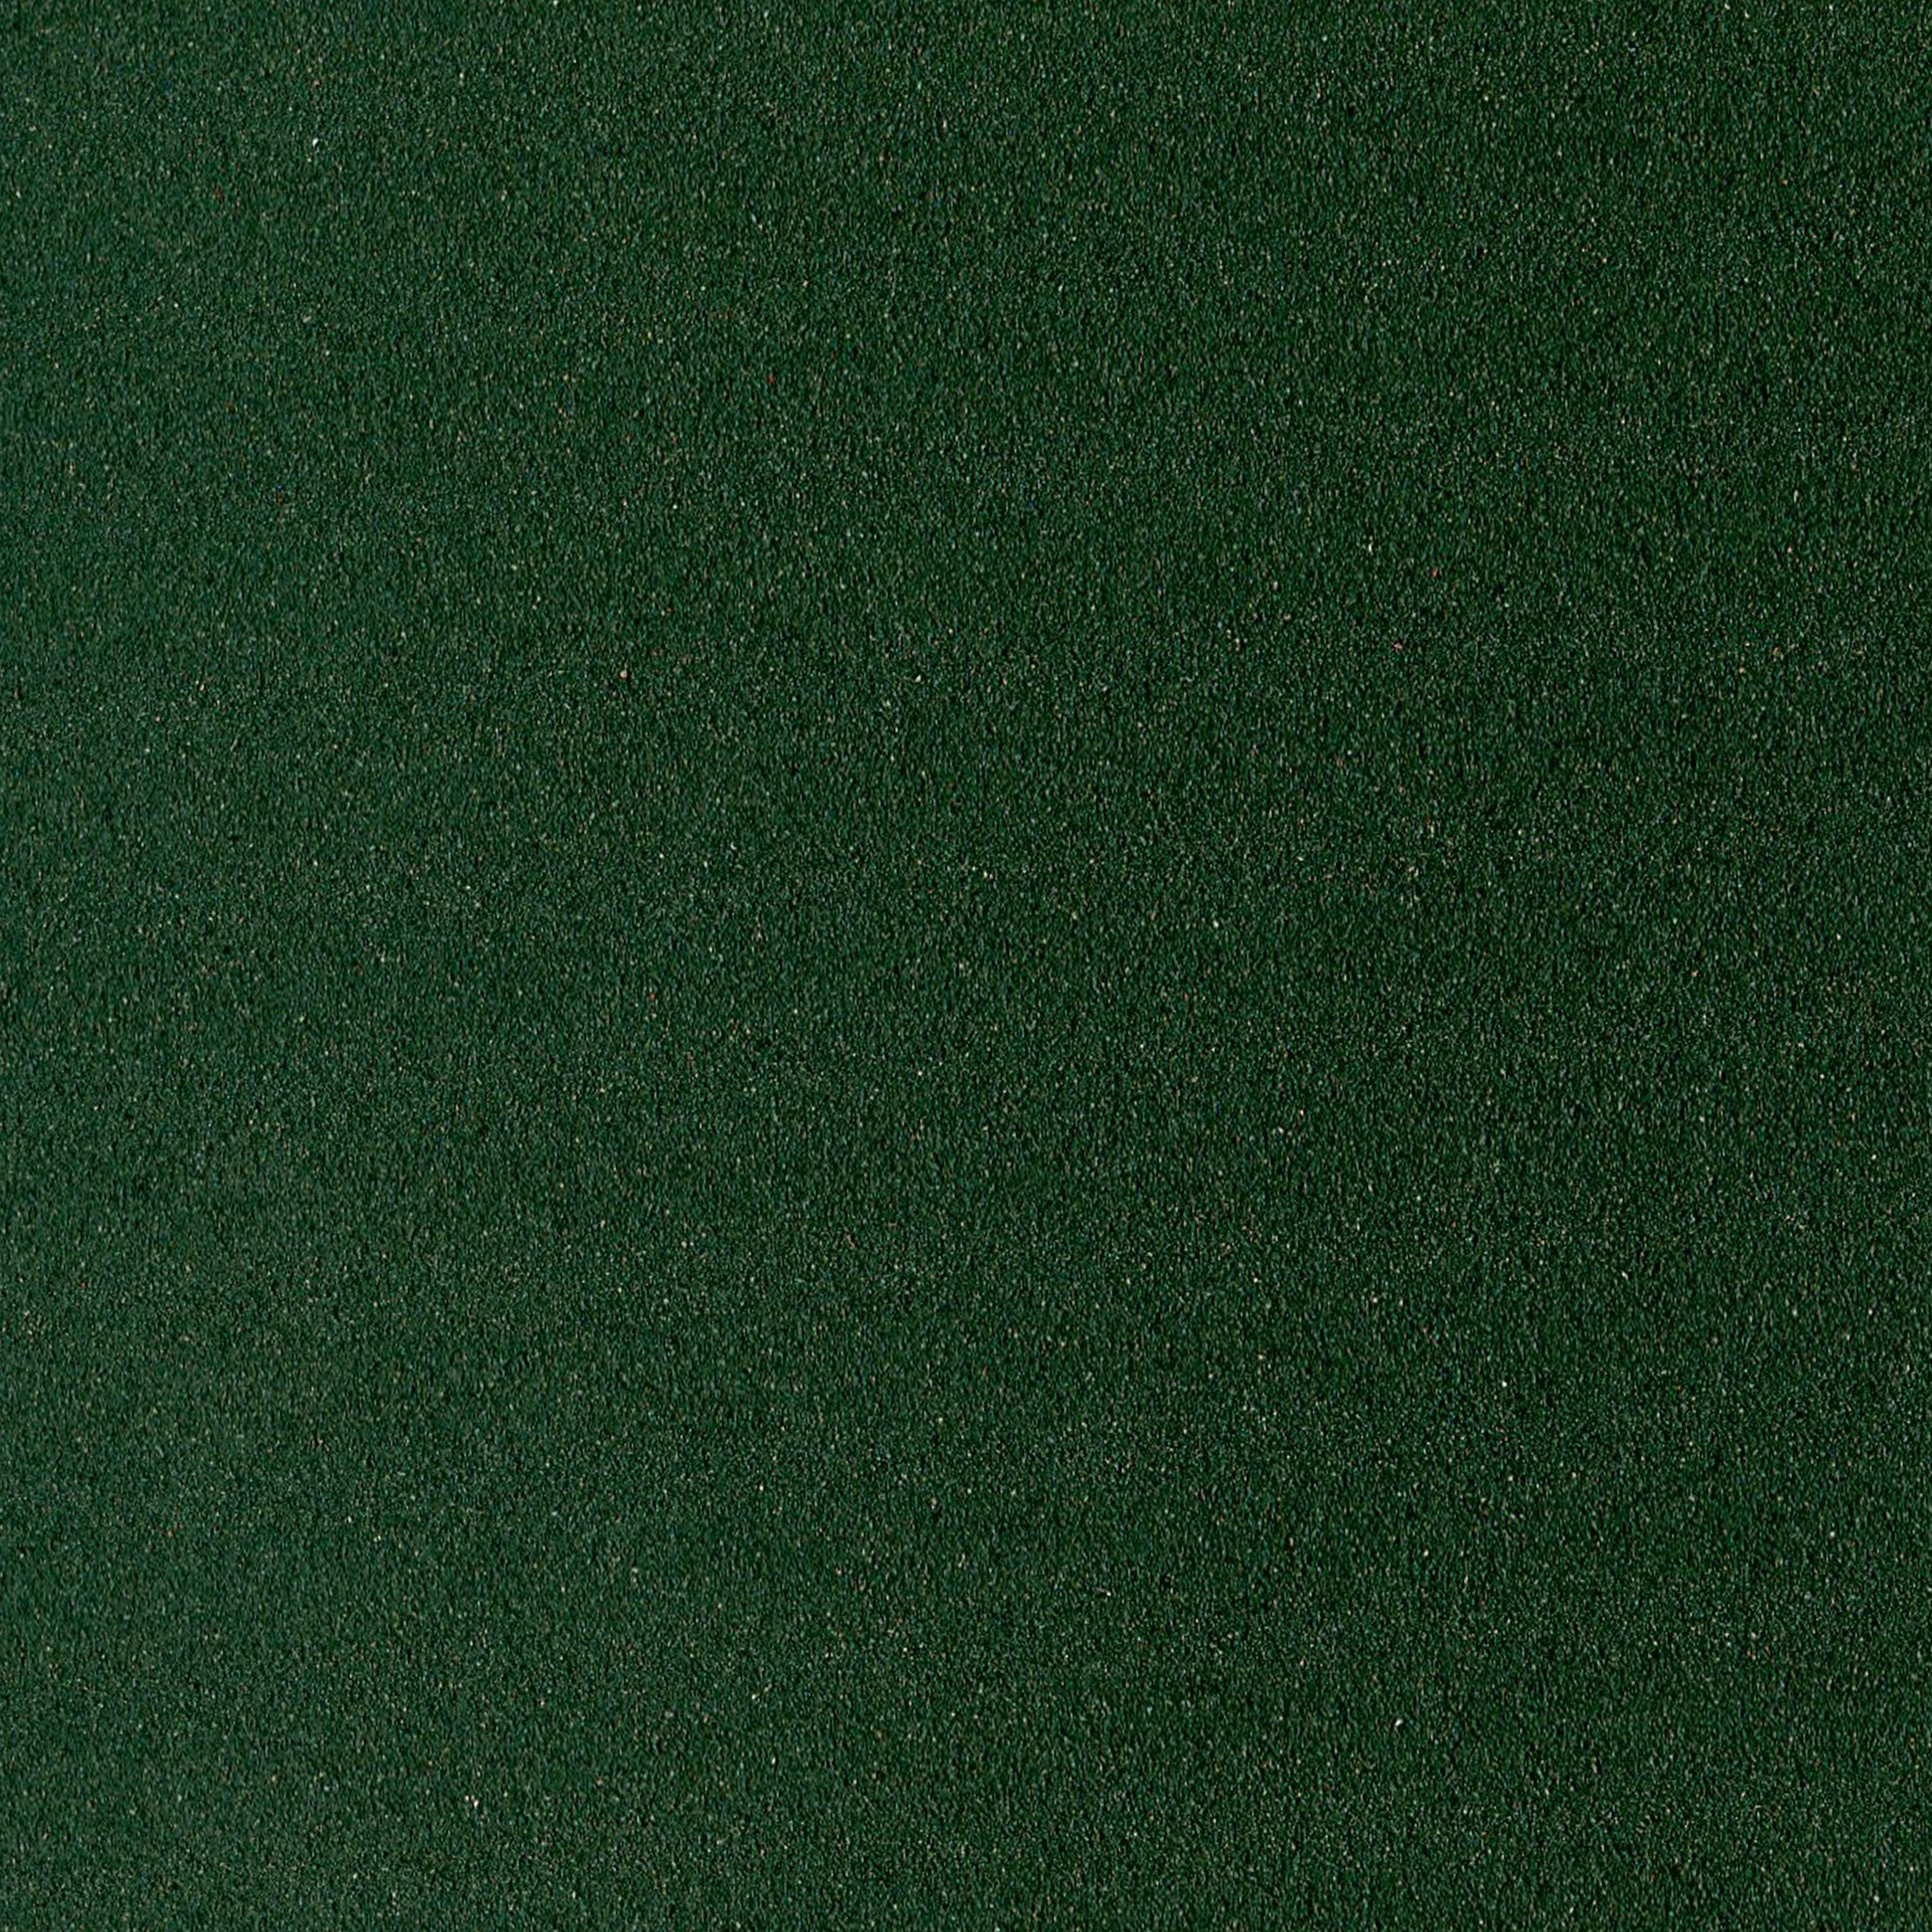 Картон для пастели PASTEL CARD 360г/кв.м 500х650мм цв.№09 зеленый темный по 986.00 руб от Sennelier